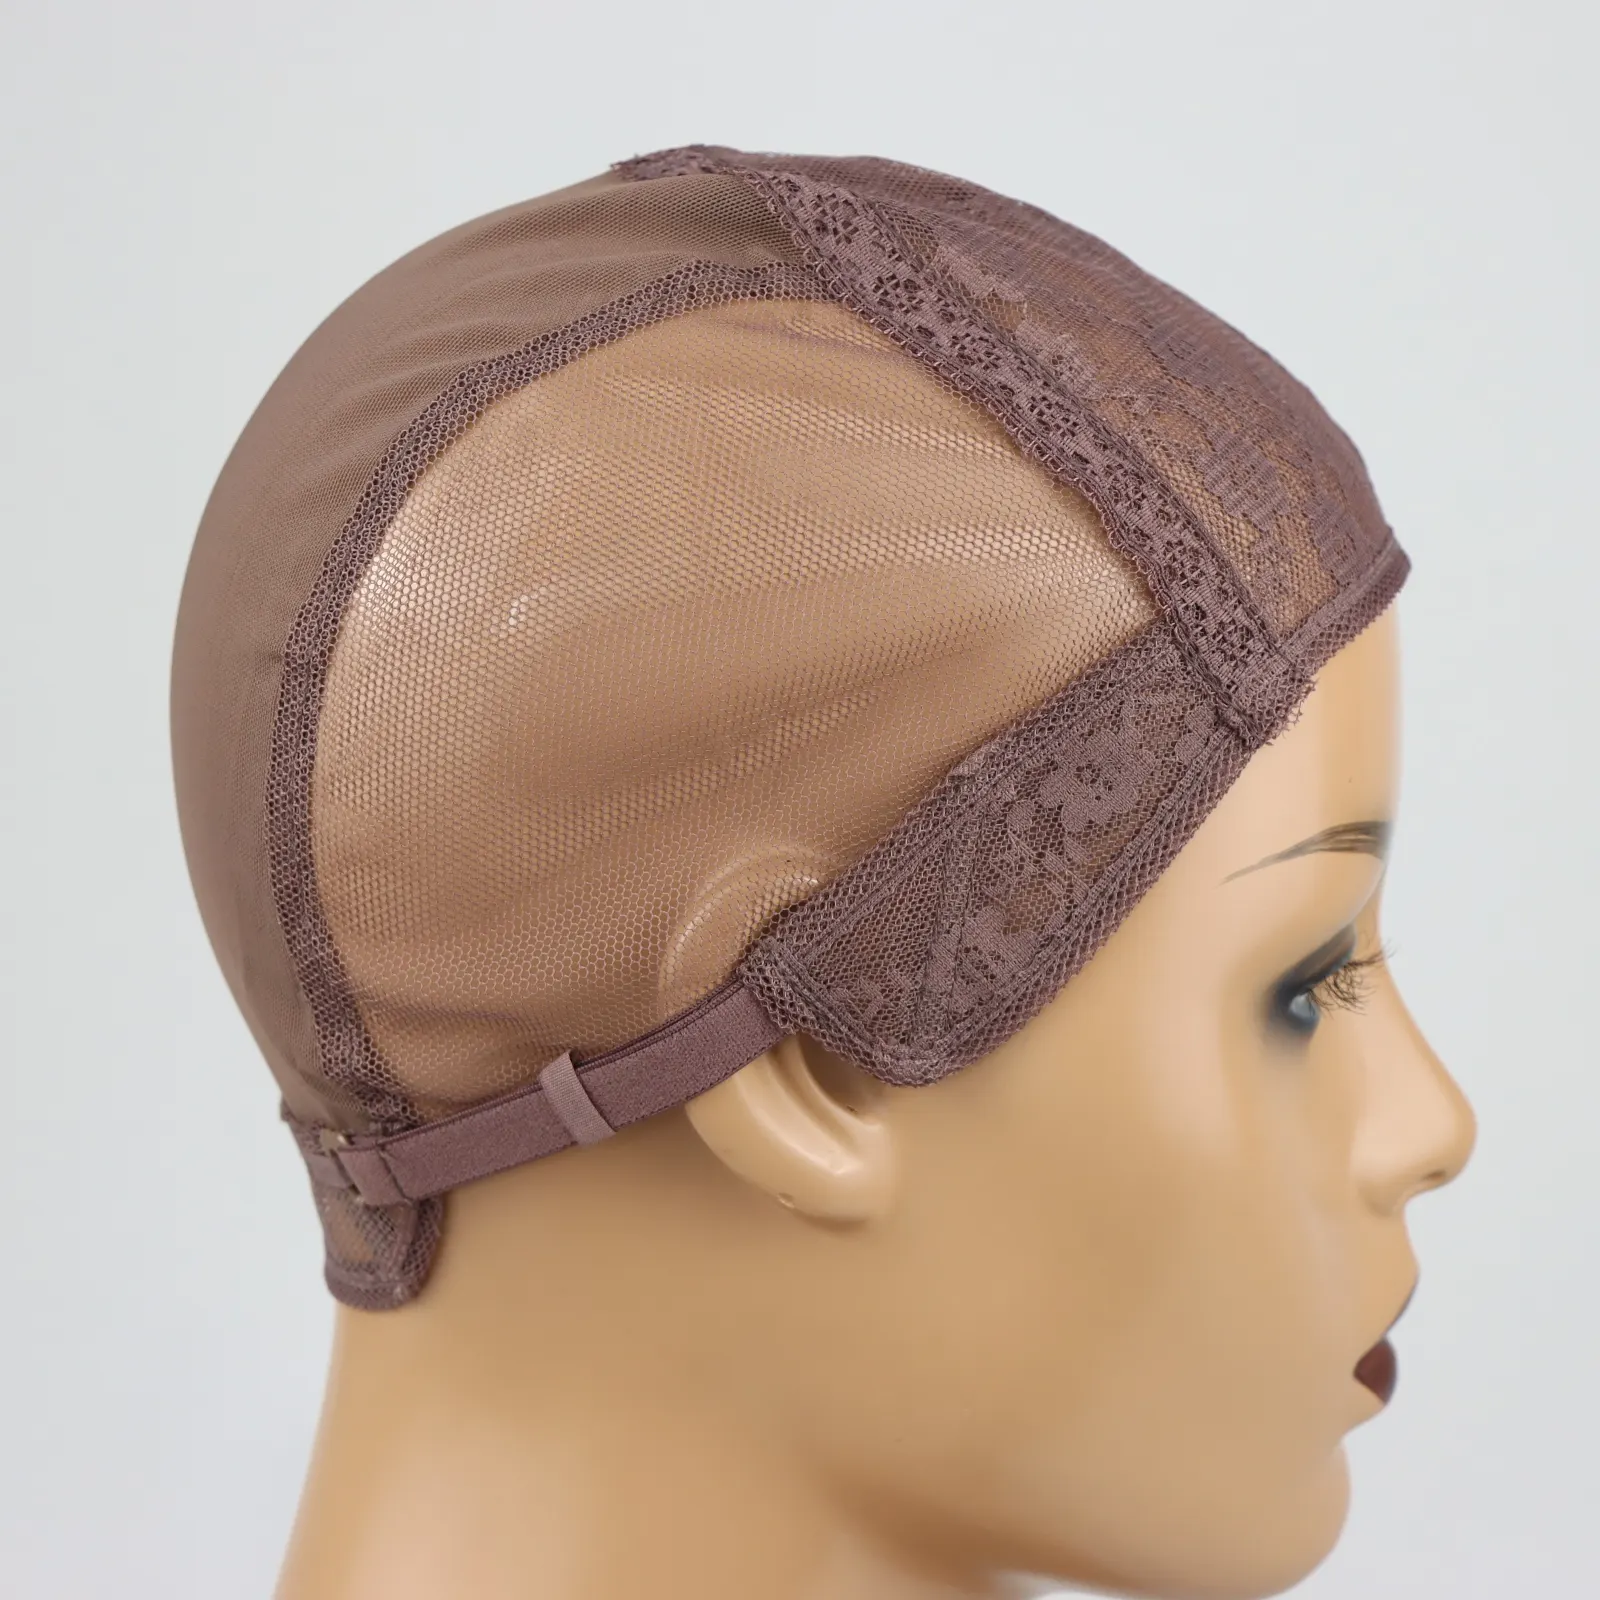 Wig Machine Adjustable Headband Wig Cap for Headband Wig Making